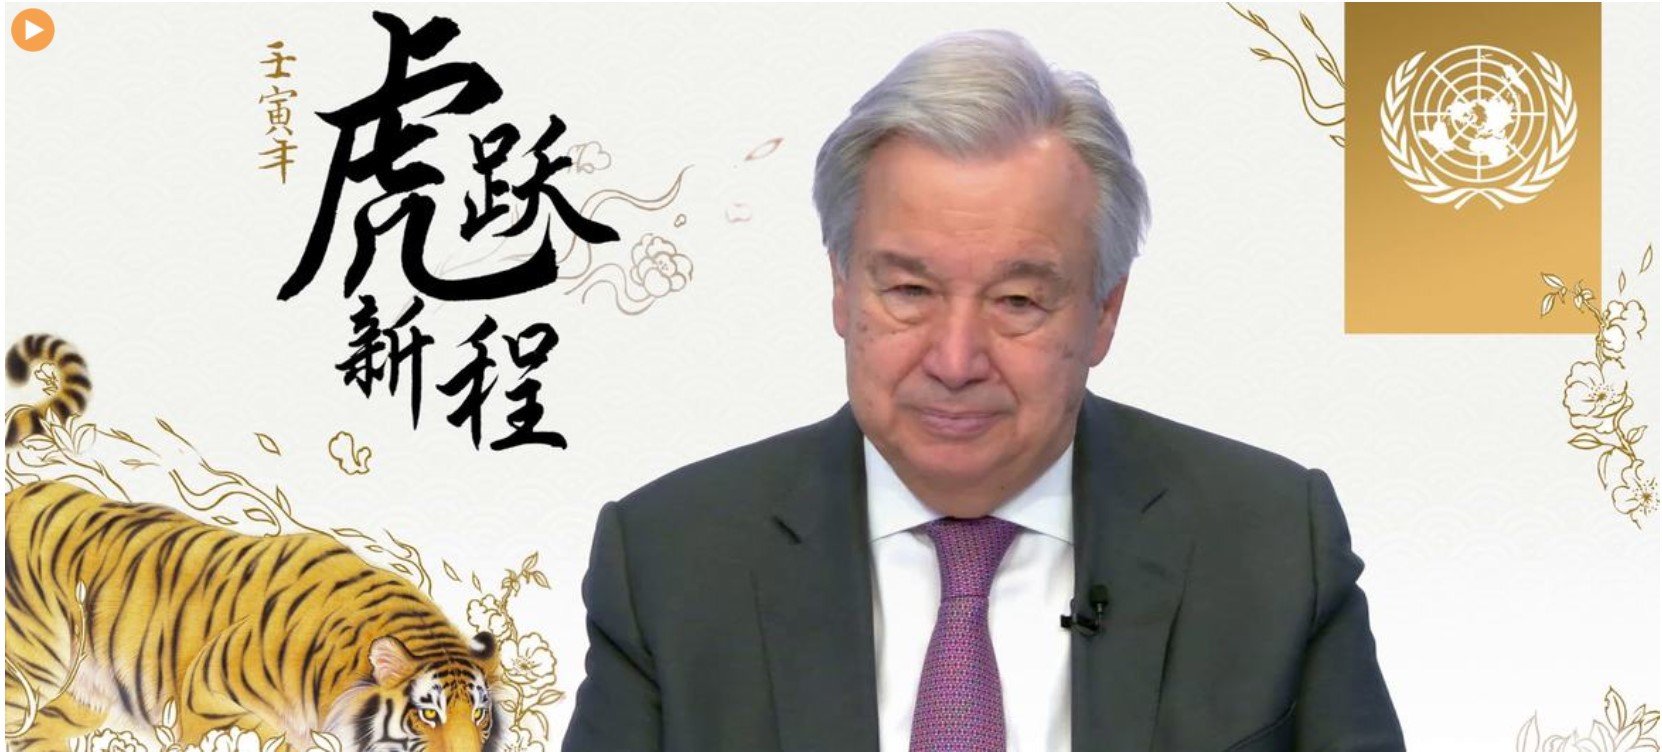 联合国秘书长发表虎年新春致辞 祝福北京冬奥